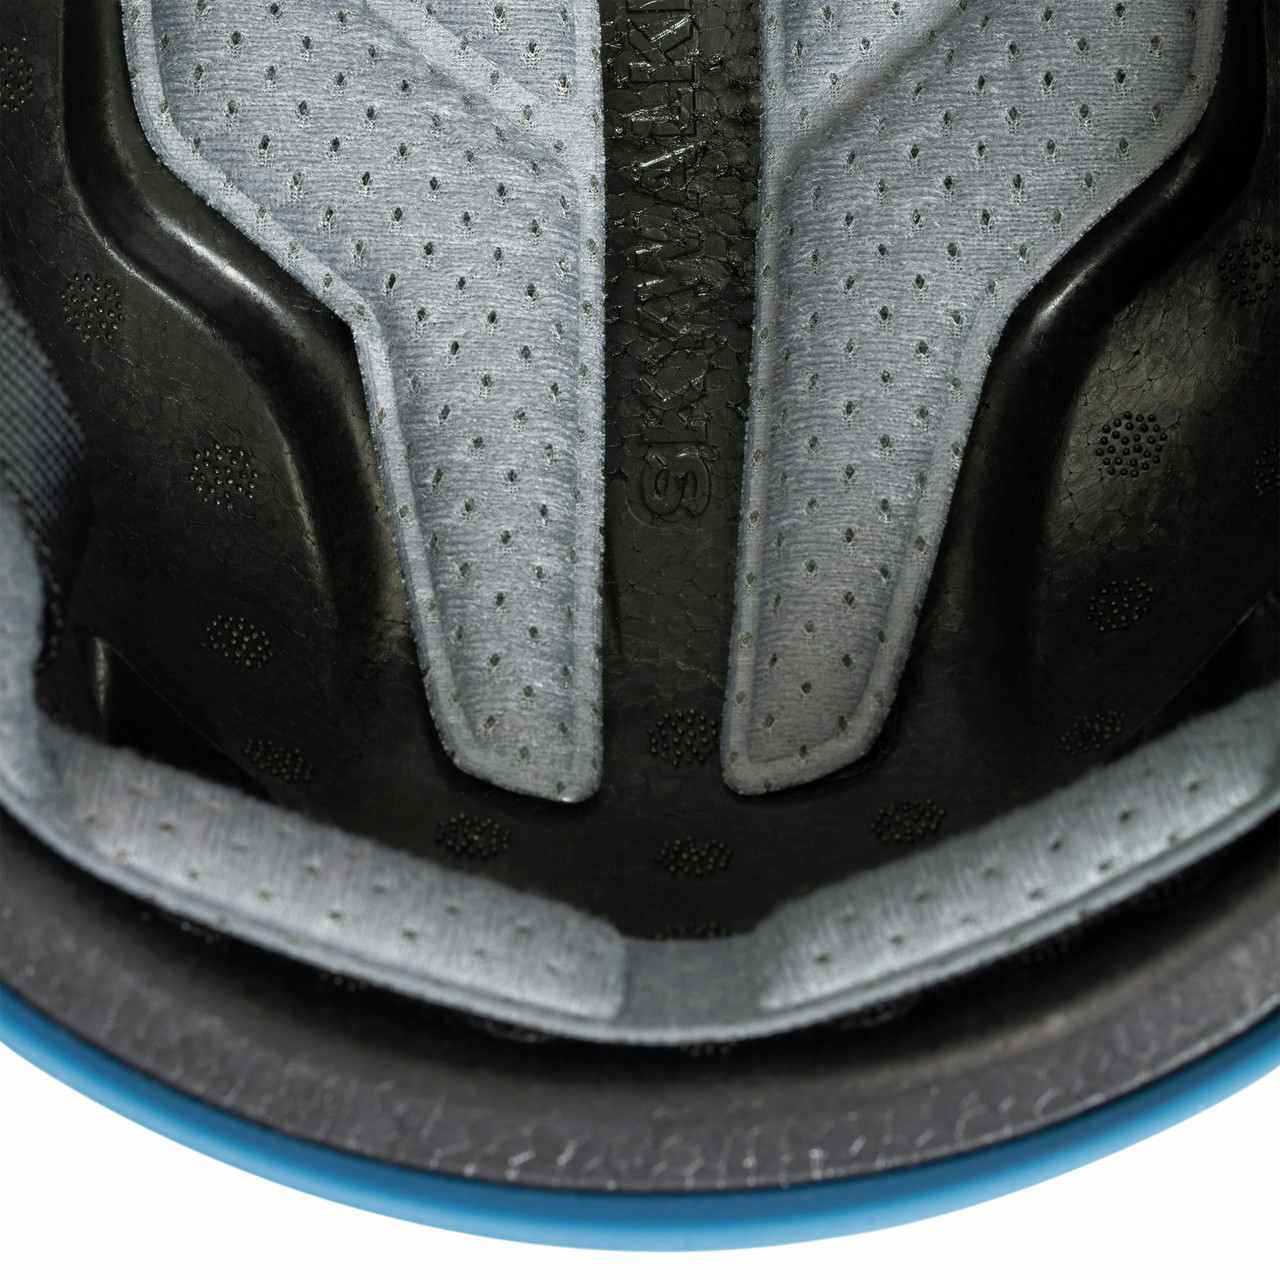 Skywalker 3.0 Helmet Blue